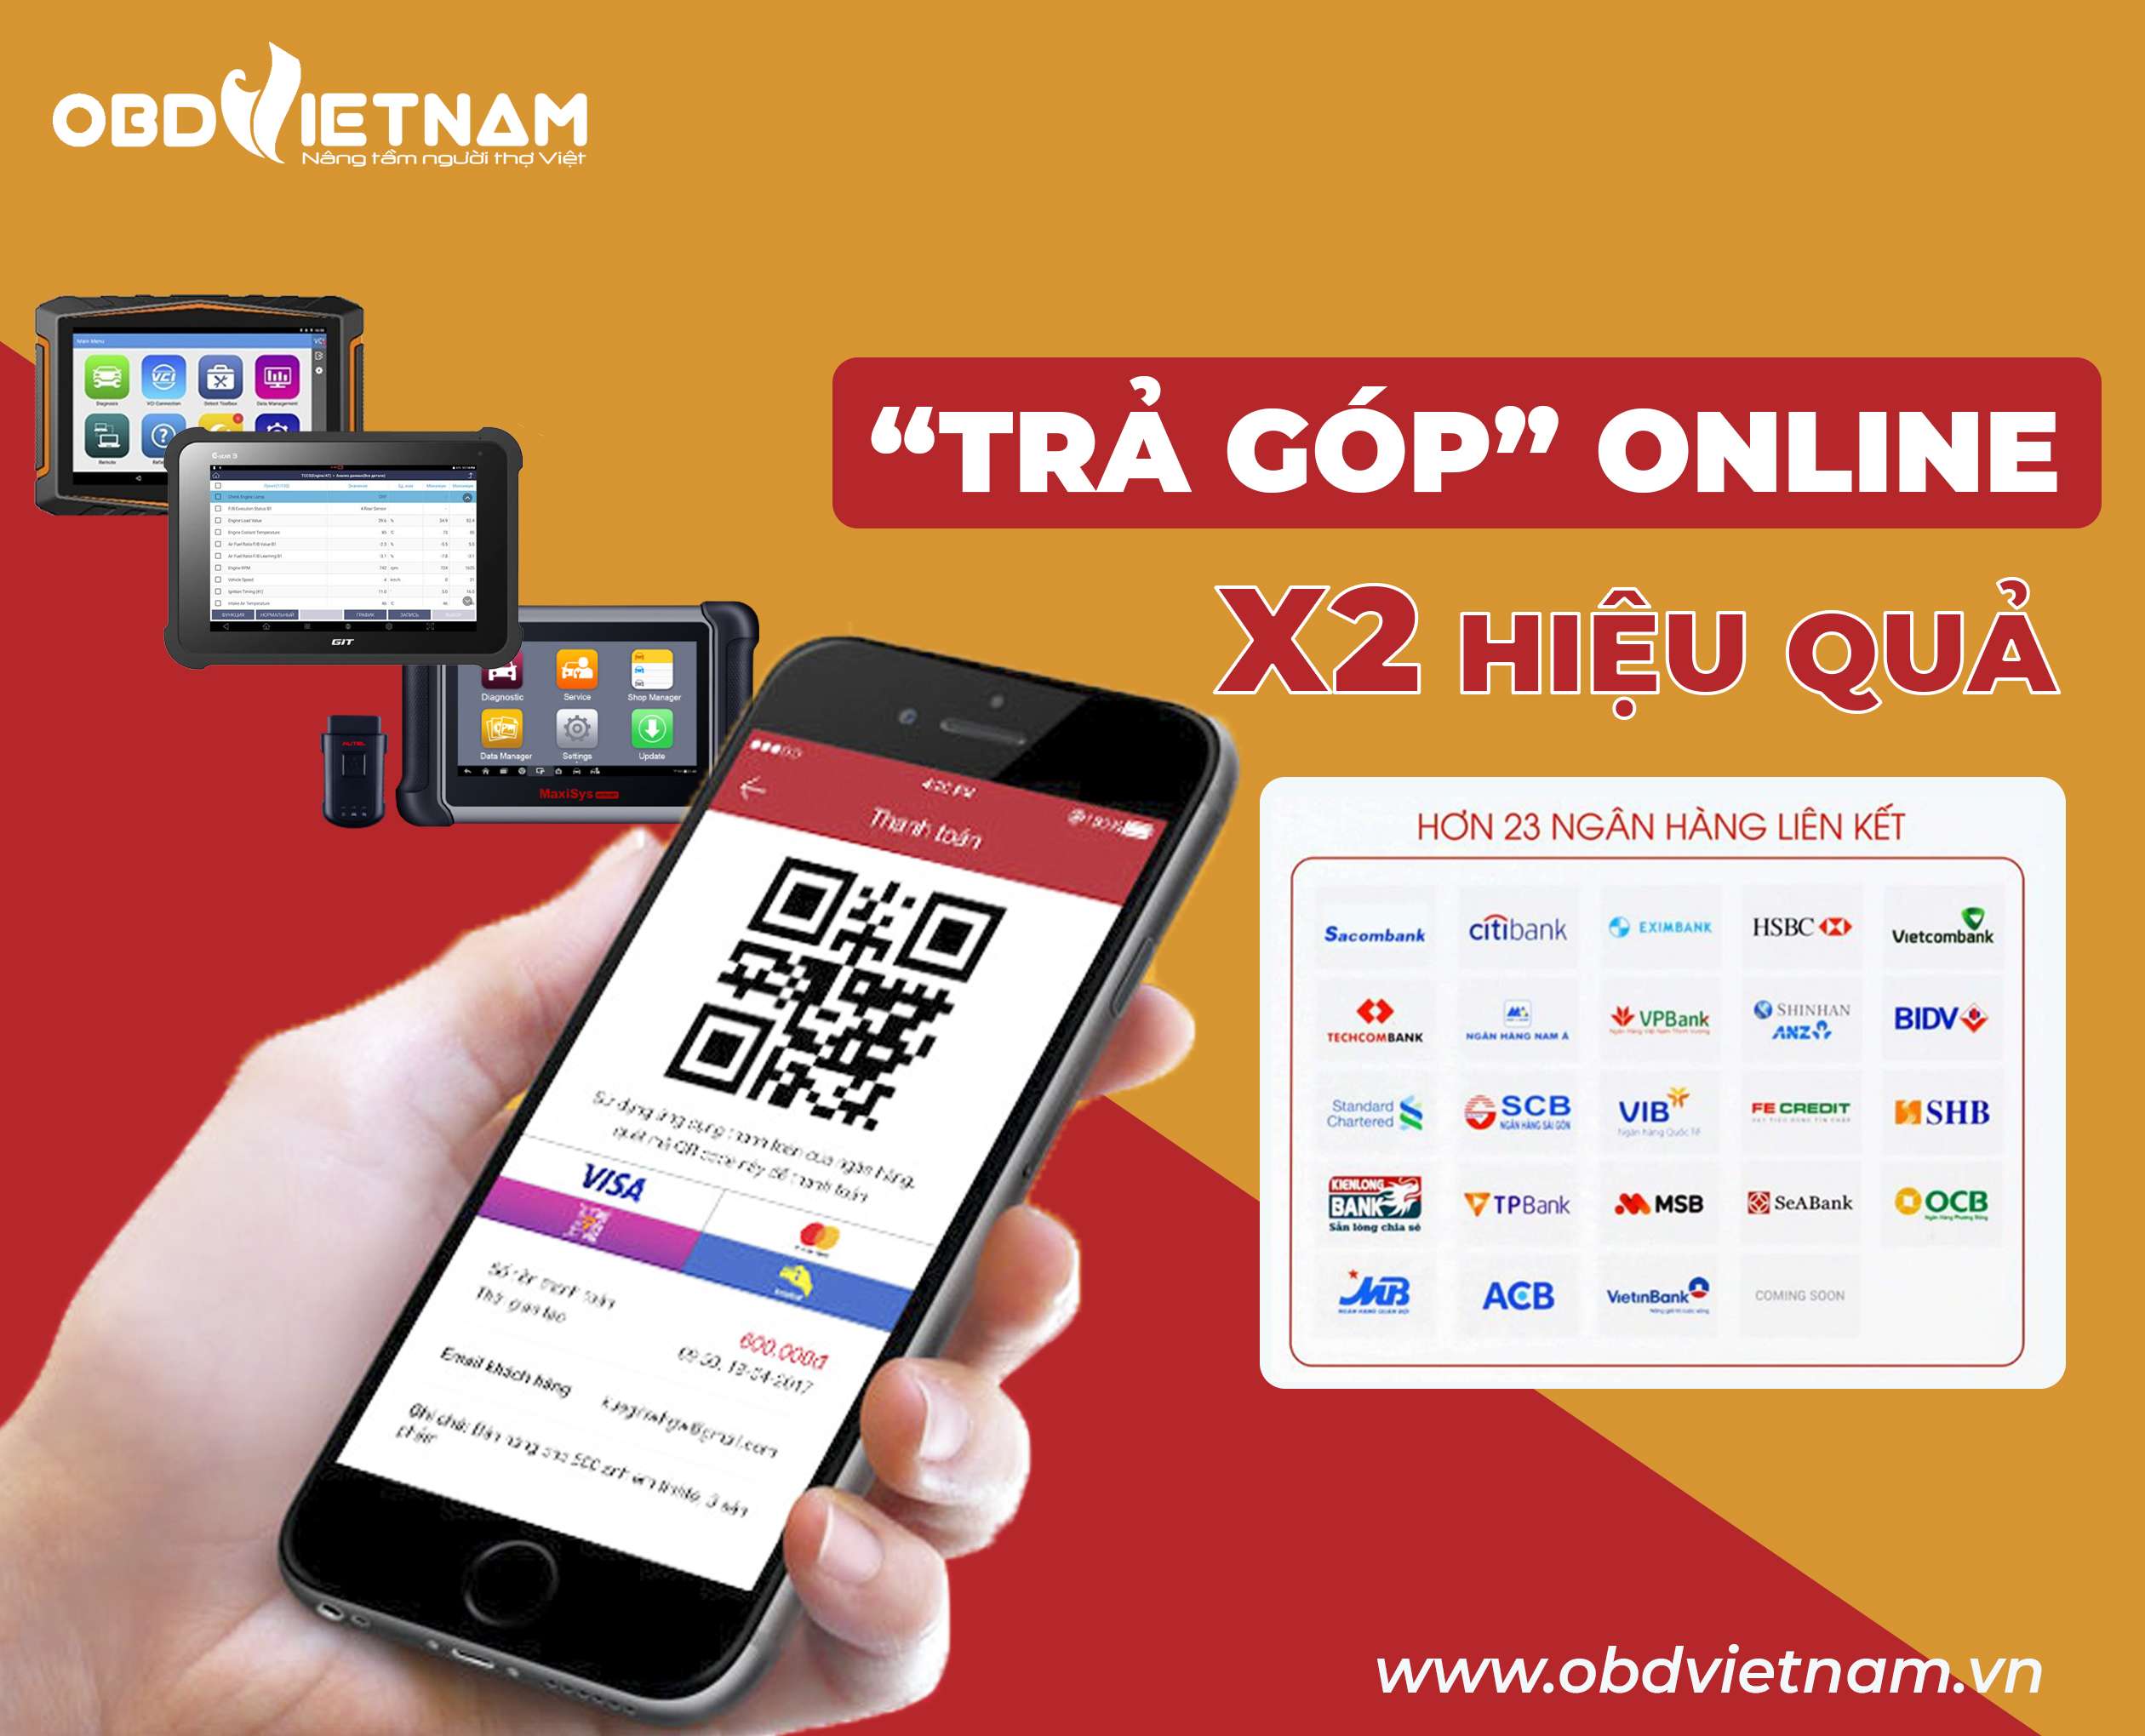 huong-dan-quy-trinh-tra-gop-online-obdvietnam